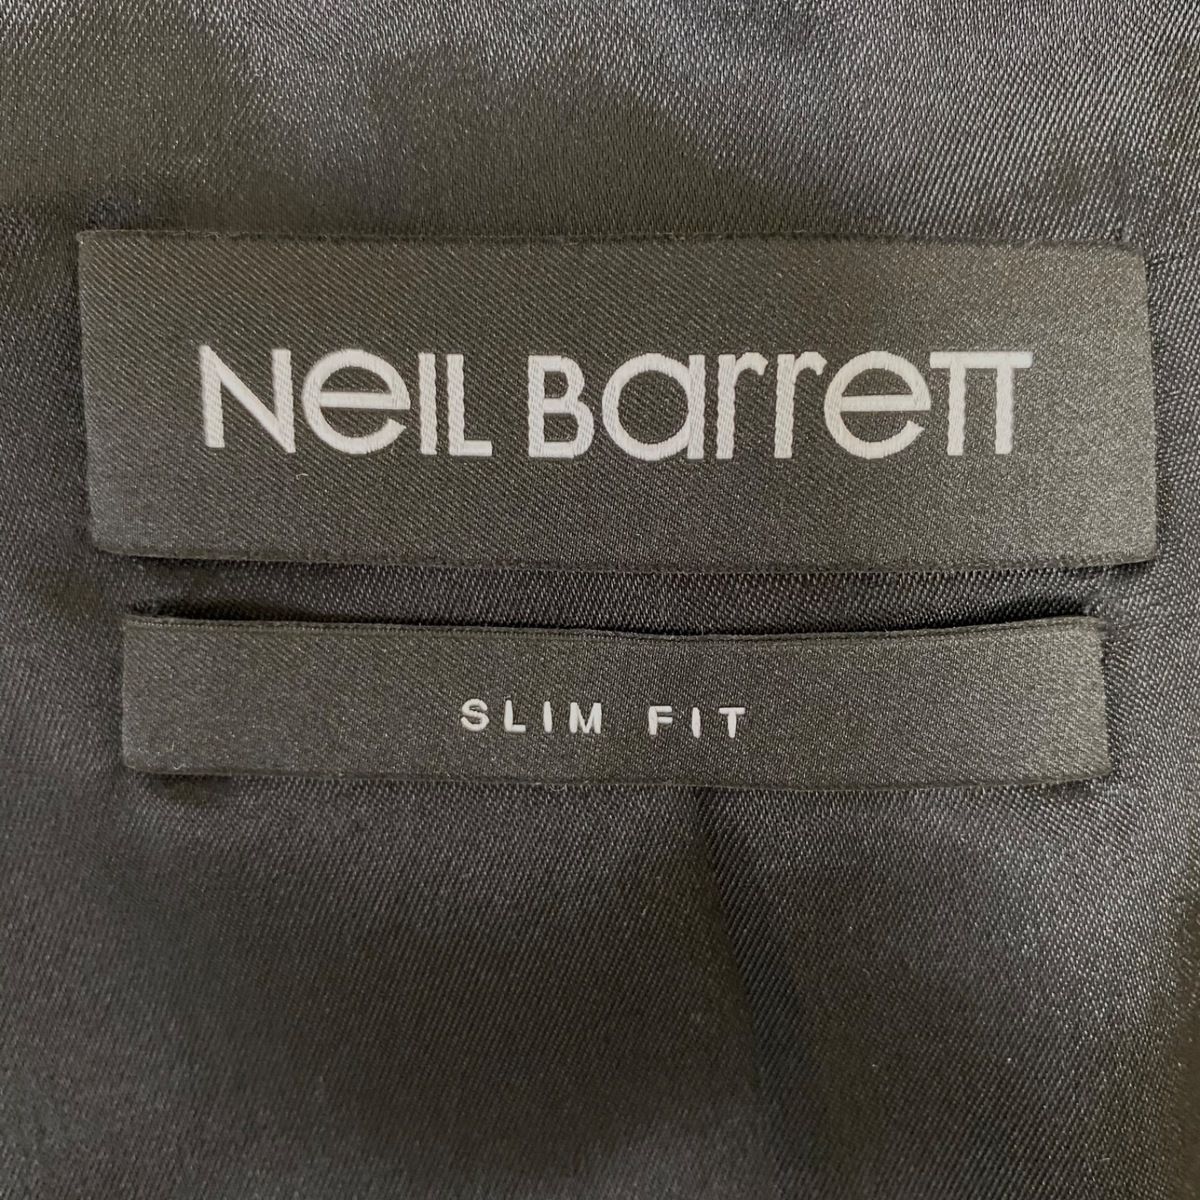 NeilBarrett(ニールバレット) シングルスーツ サイズ46 S メンズ - 黒 